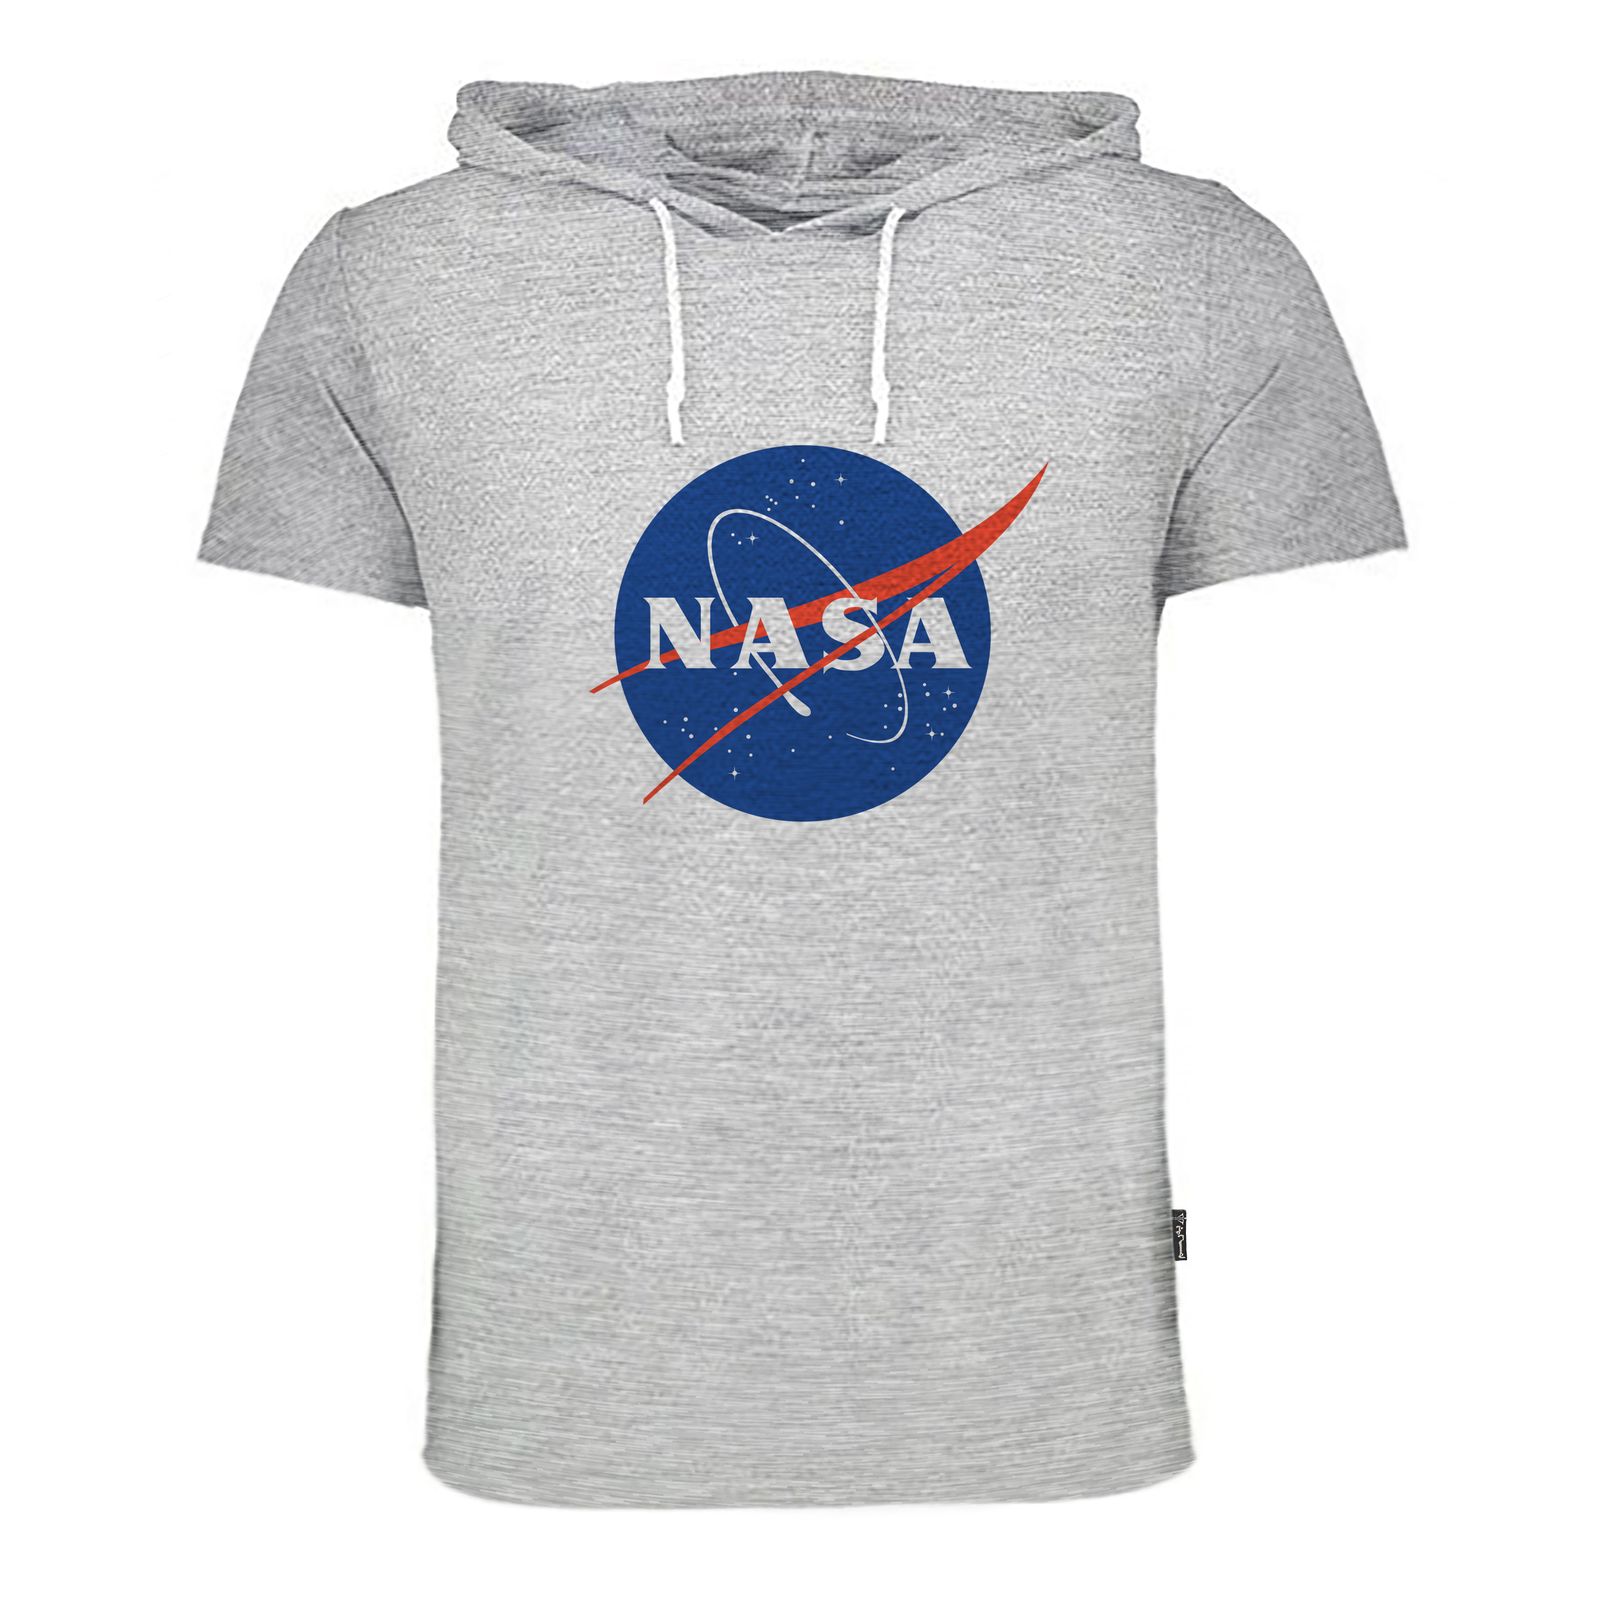 تی شرت کلاه دار زنانه به رسم مدل ناسا کد 9128 -  - 1